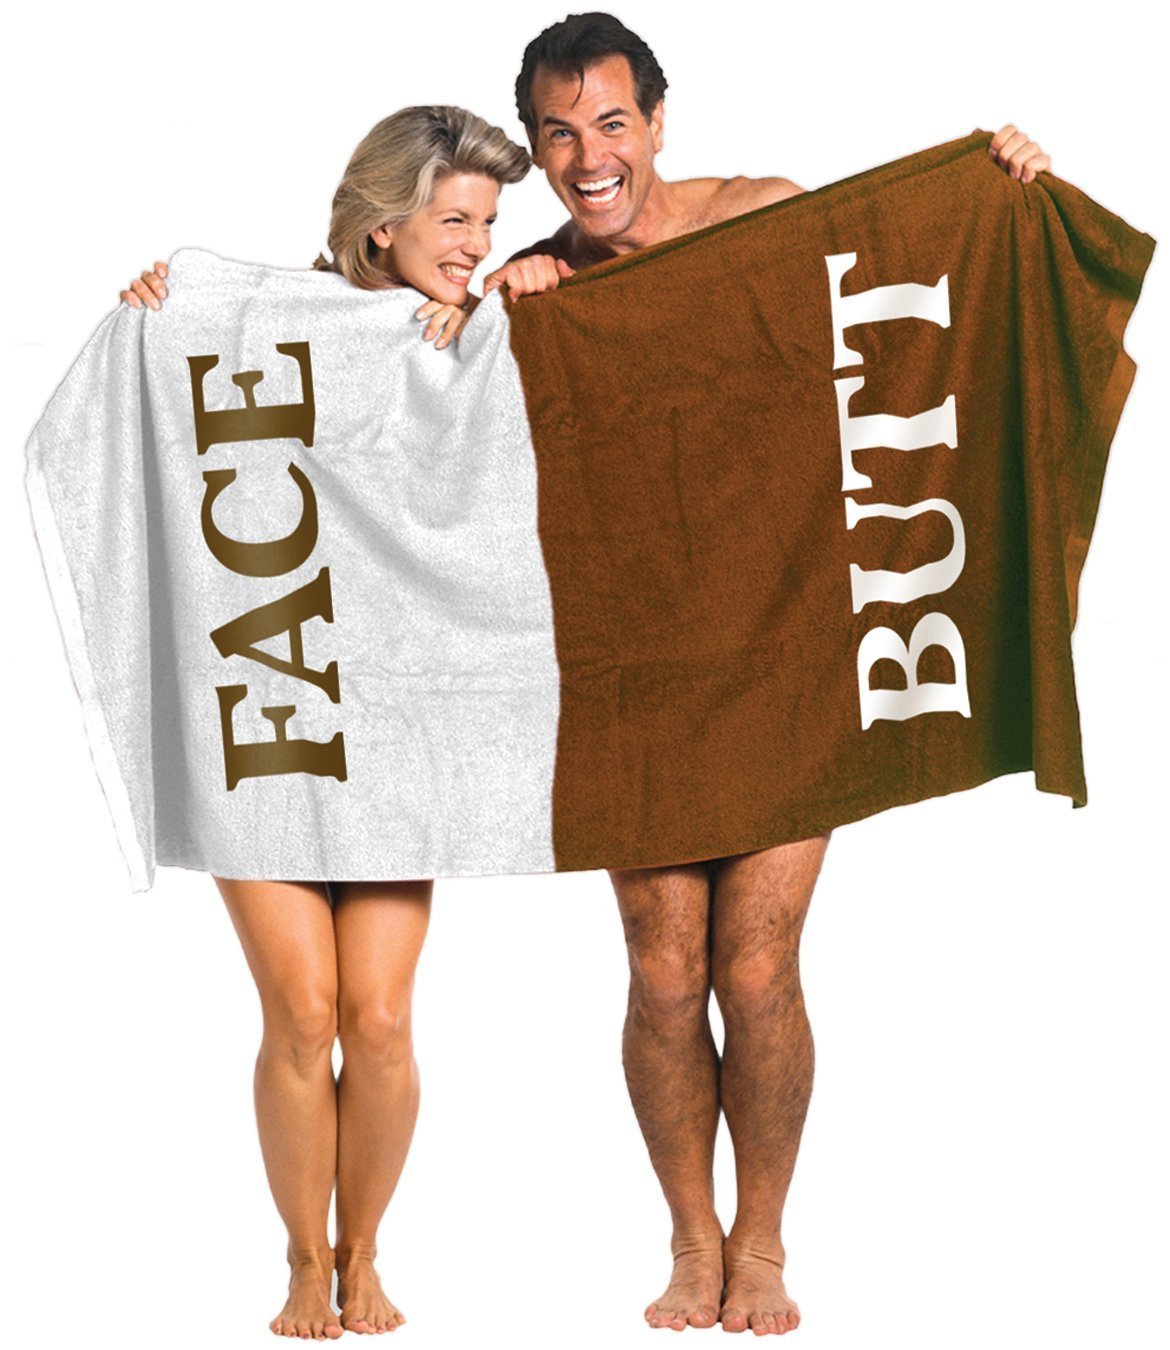 Butt Face Towel